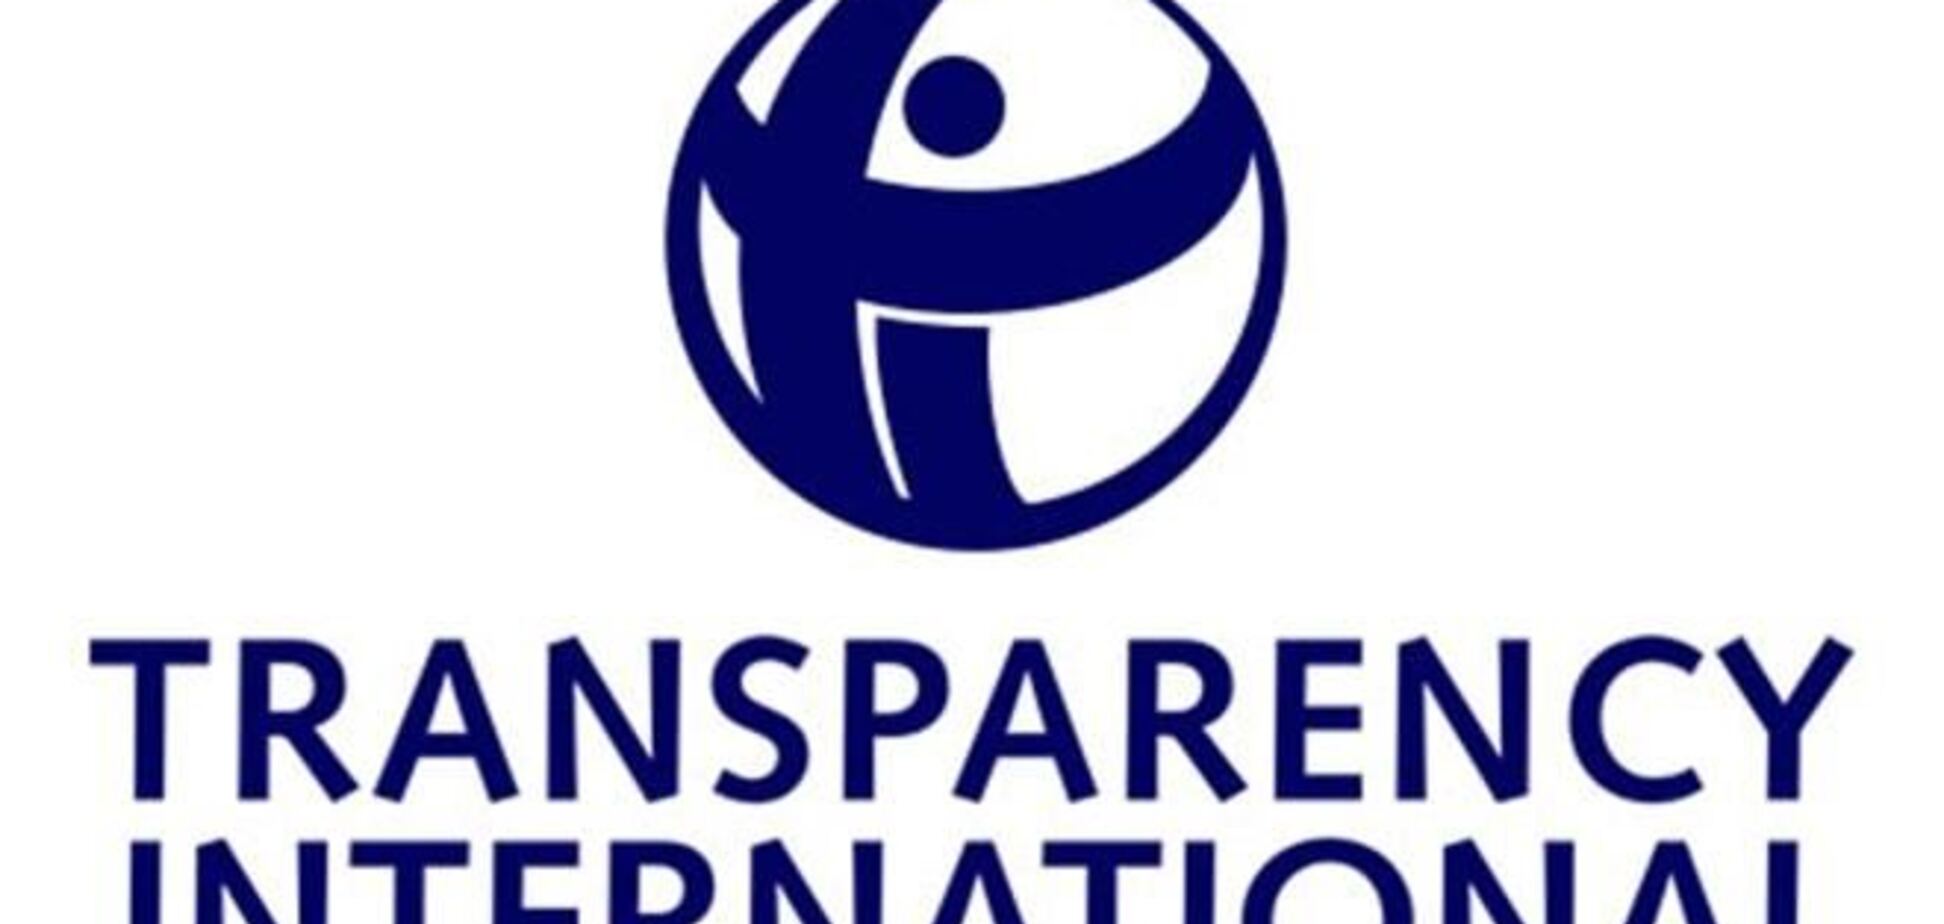 Transparency International считает выборочными сведения из госреестра коррупционеров